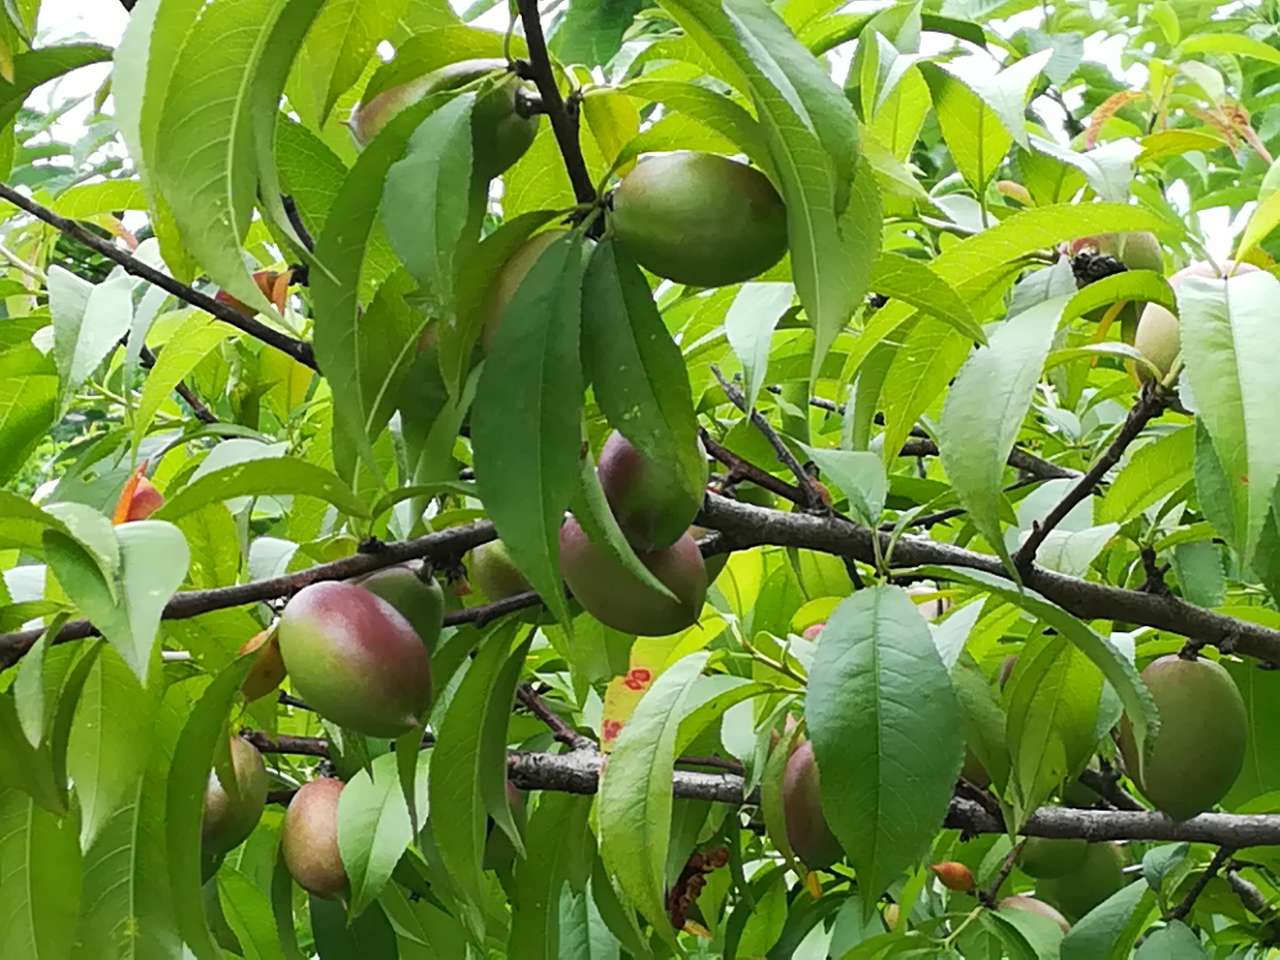 舜耕山的桃树挂满了果实,期待着成熟以后,人们来采摘品尝